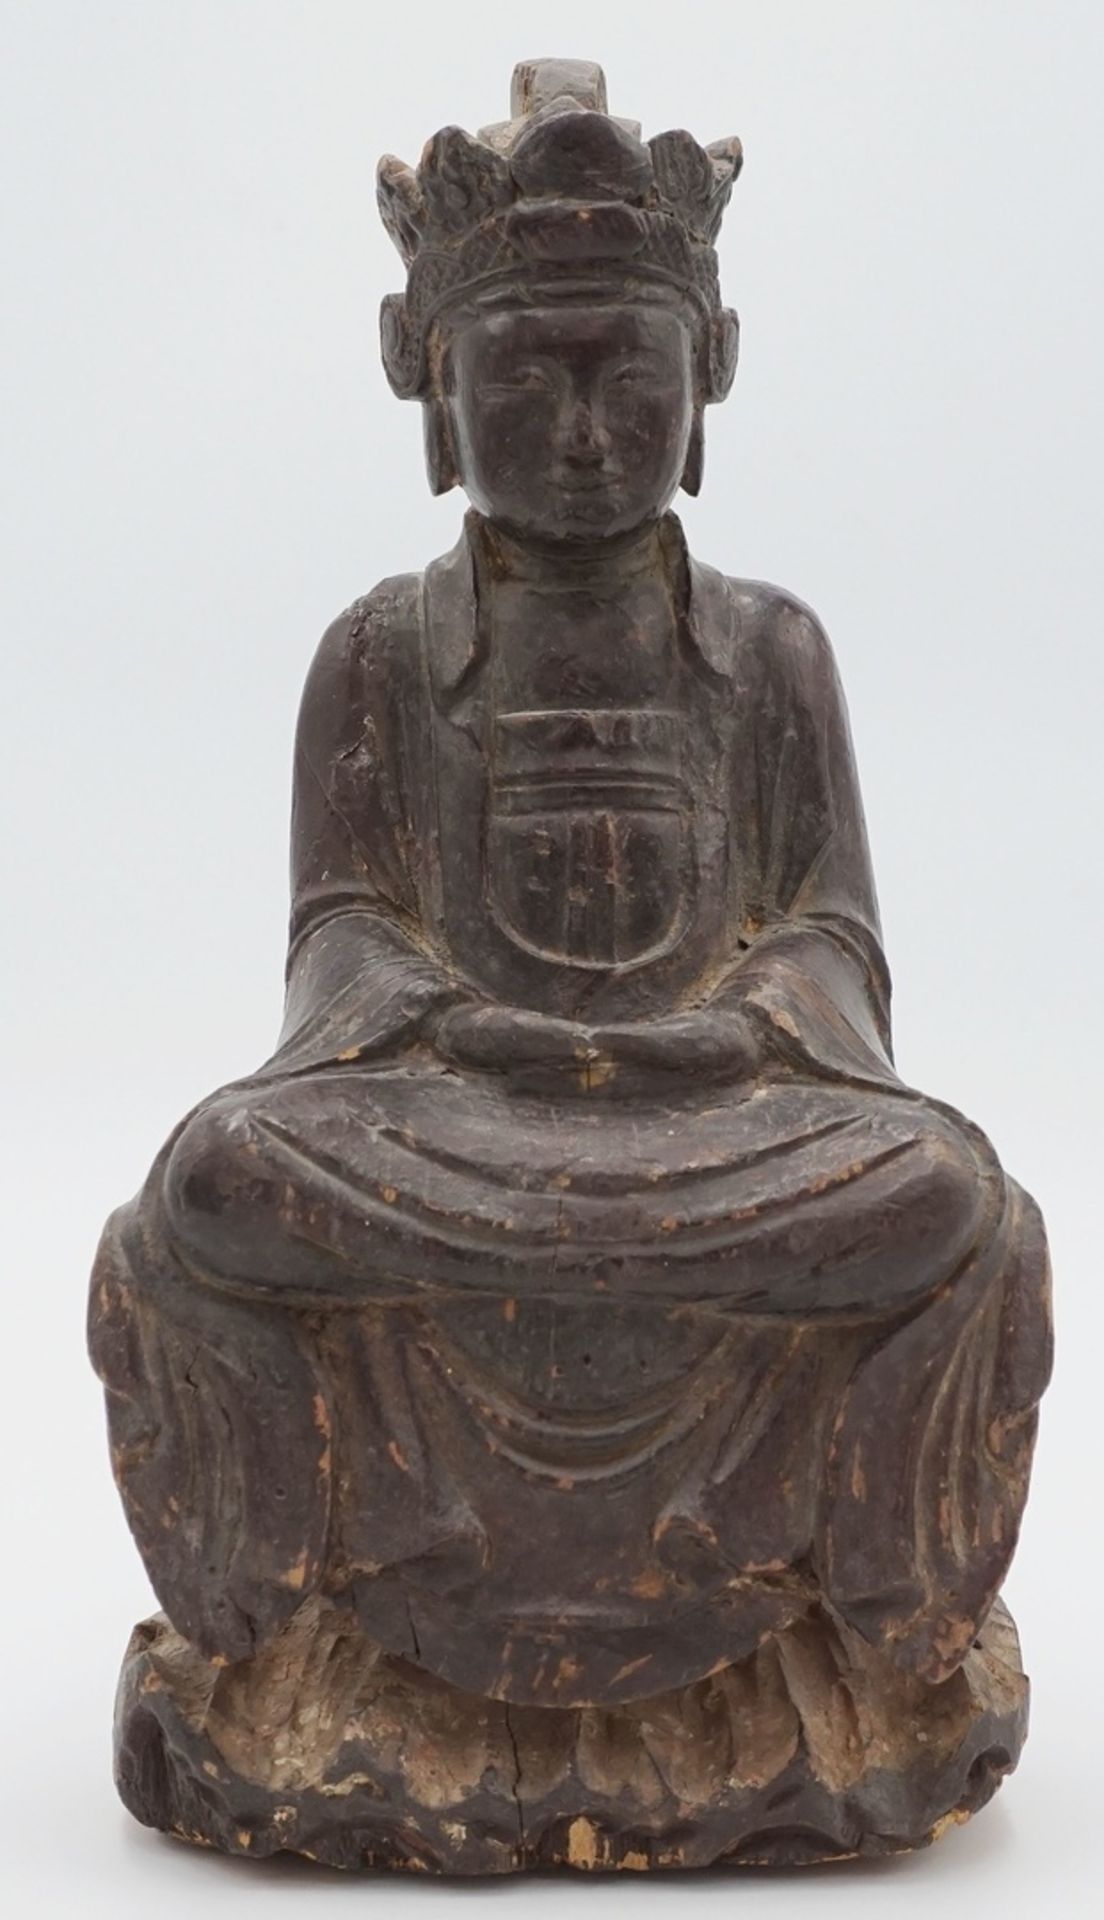 Buddha auf Thron sitzend, kleiner Hausaltar, China, 19. Jh.Holz, mit alter Lackfassung, rückseitig